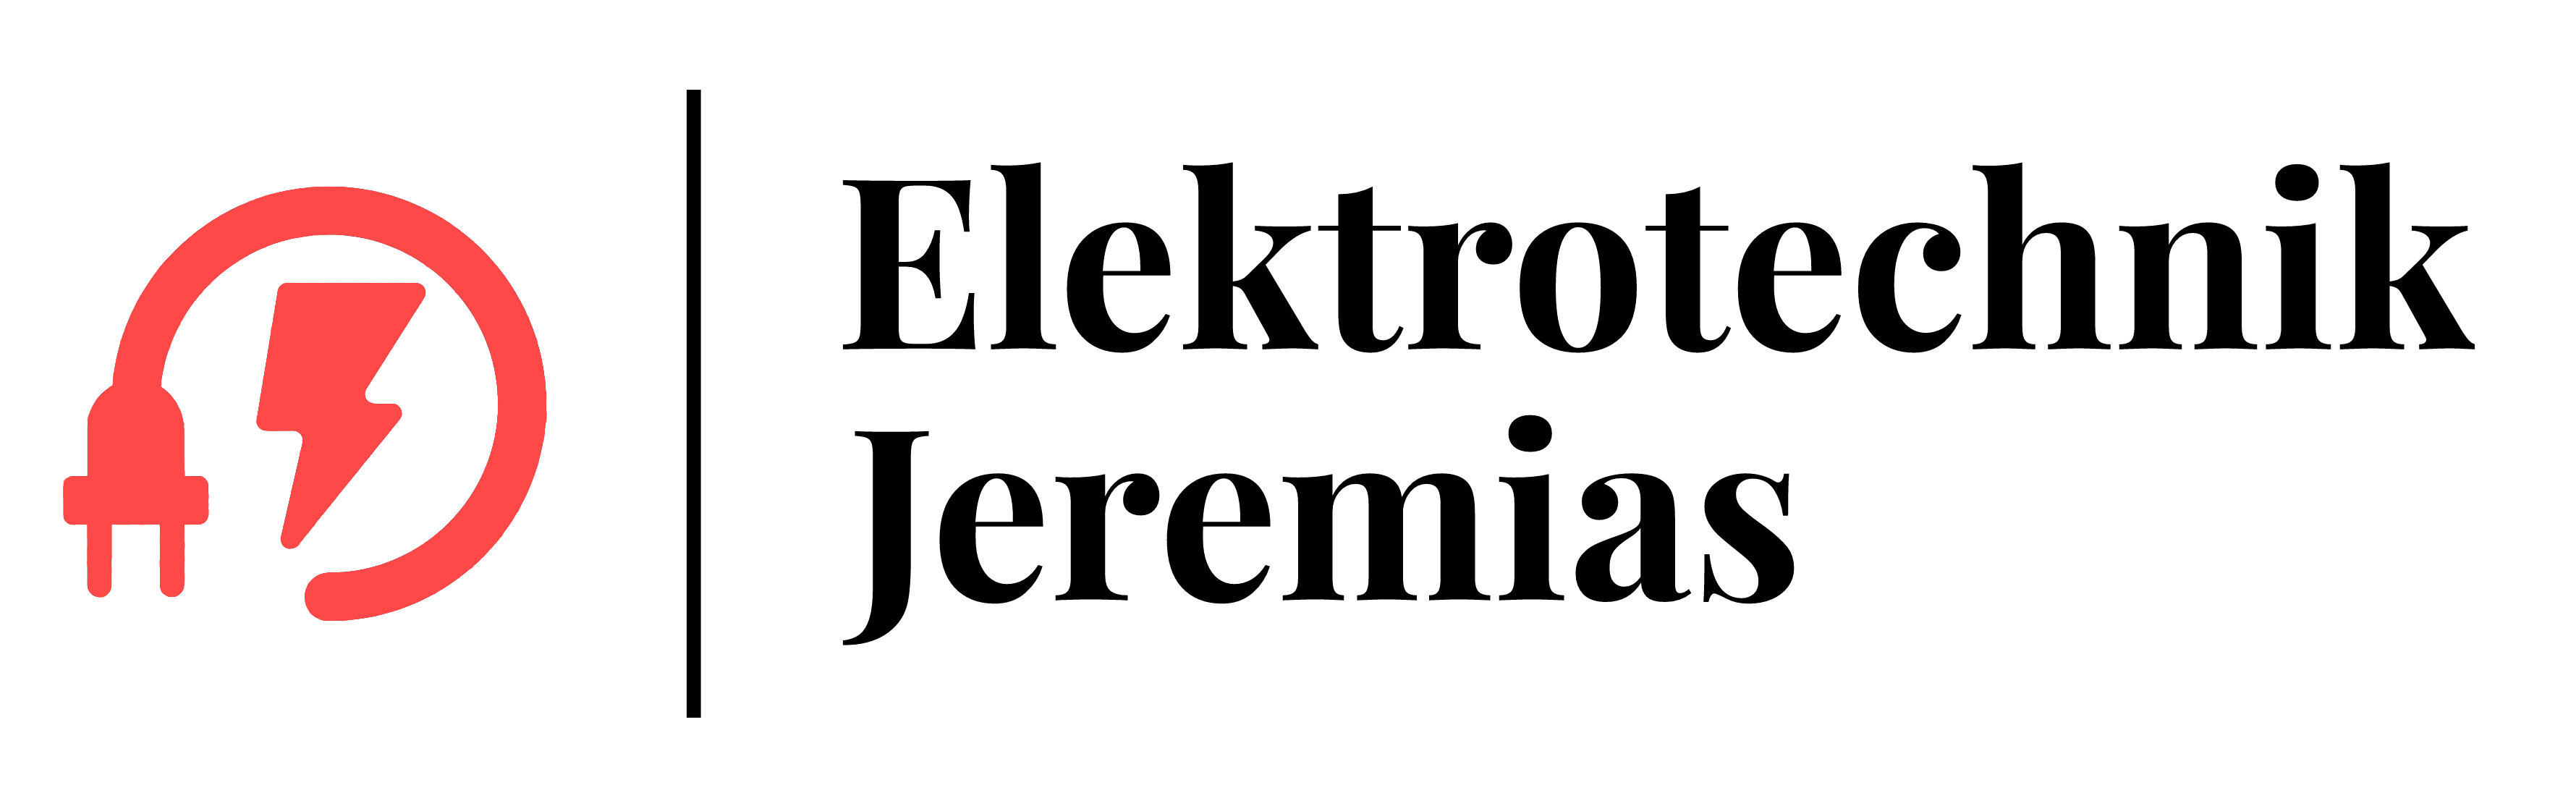 Bild 1 Elektrotechnik Jeremias in Kotzen